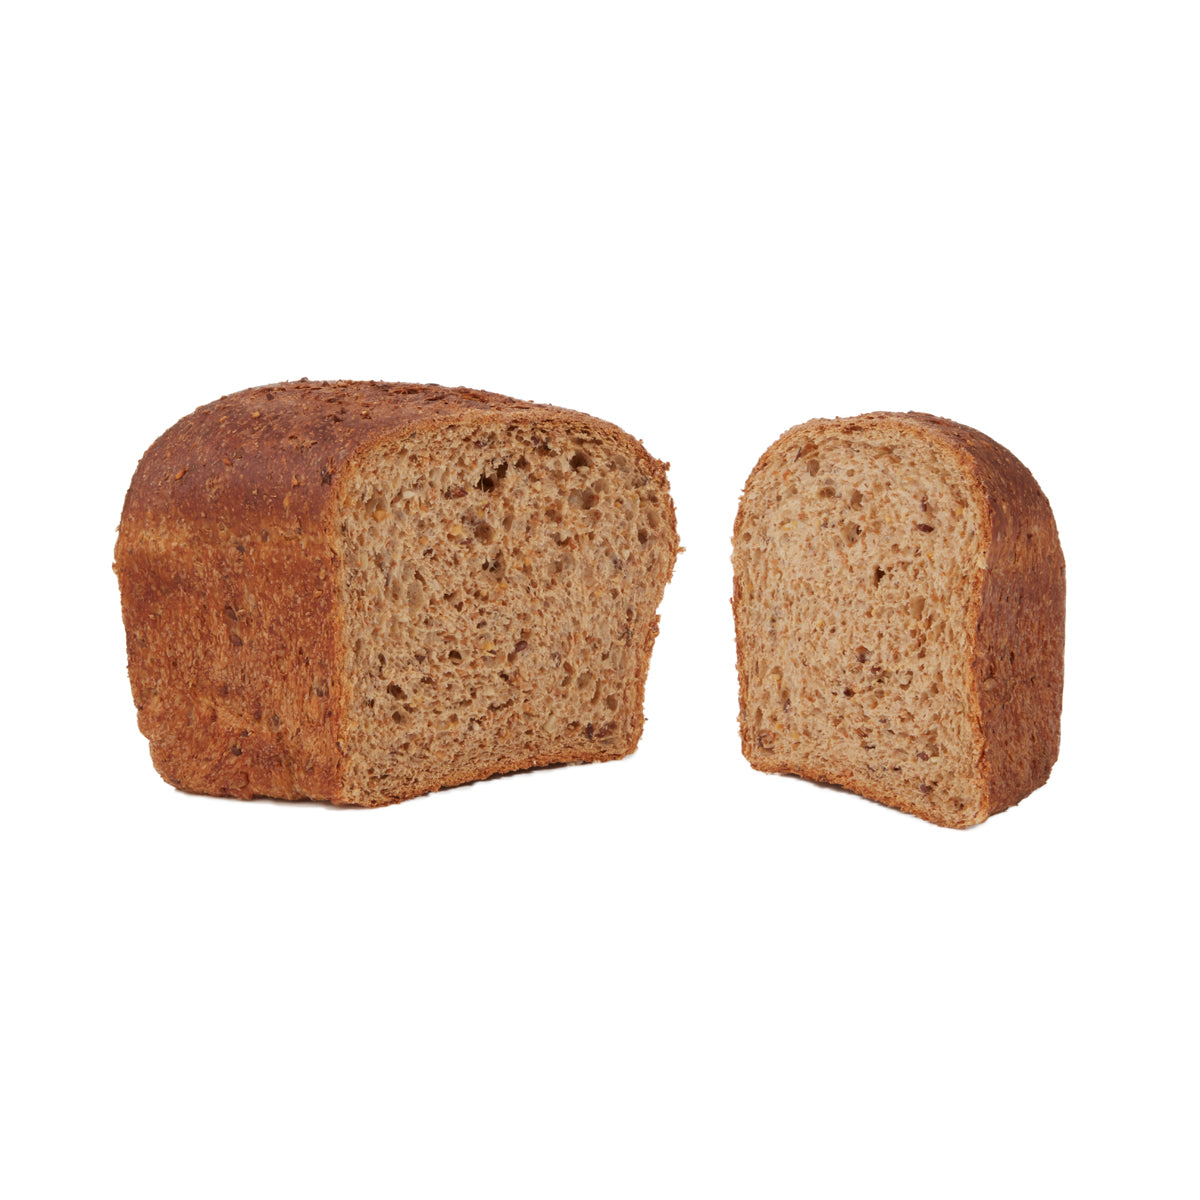 Koolhydraatarm brood - De Vers Mannen